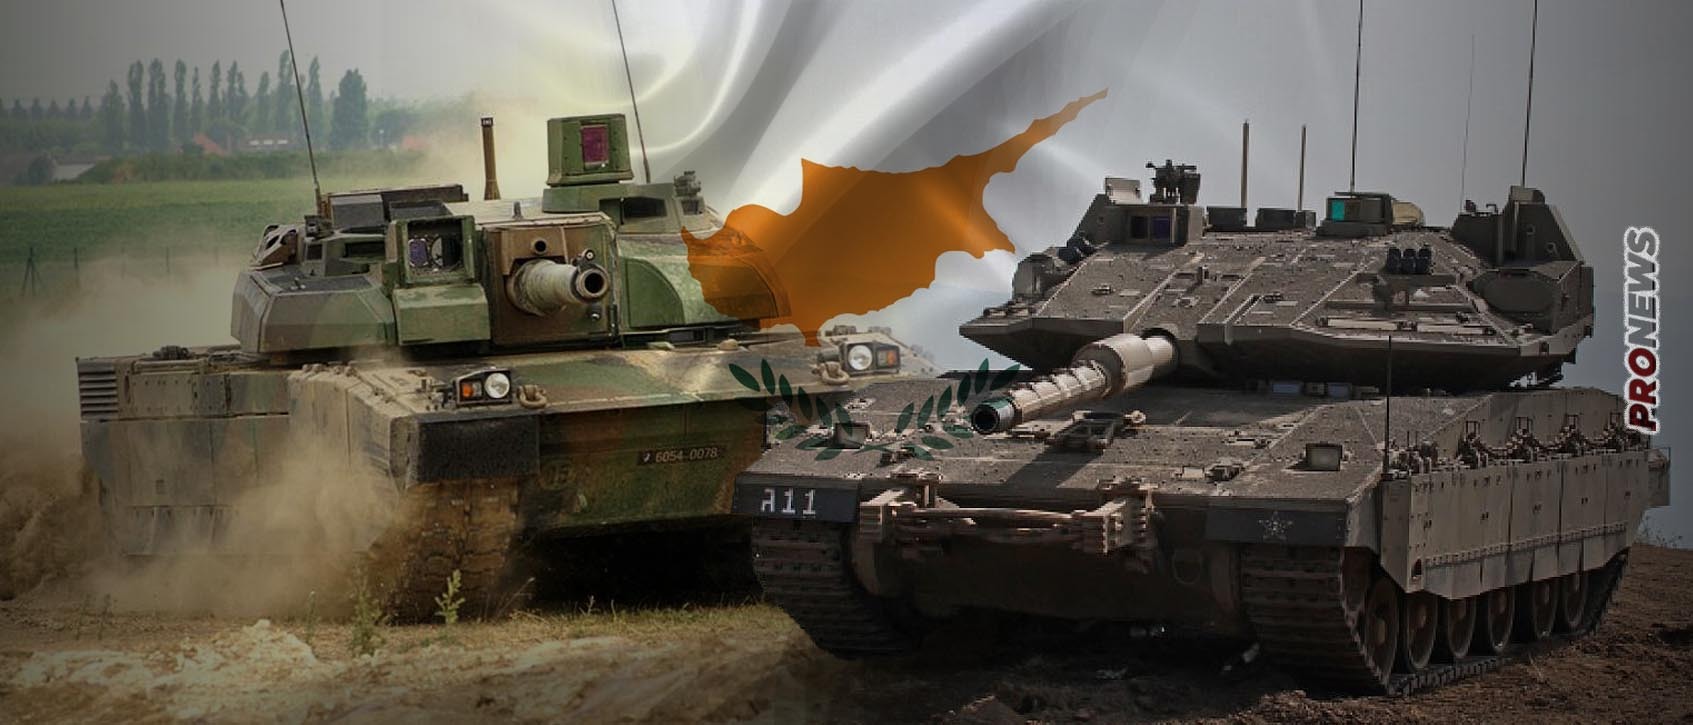 Εθνική Φρουρά: Προχωρά σε  αντικατάσταση μιας επιλαρχίας των ρωσικών αρμάτων  T-80 – Merkava Mk3 ή Leclerc;